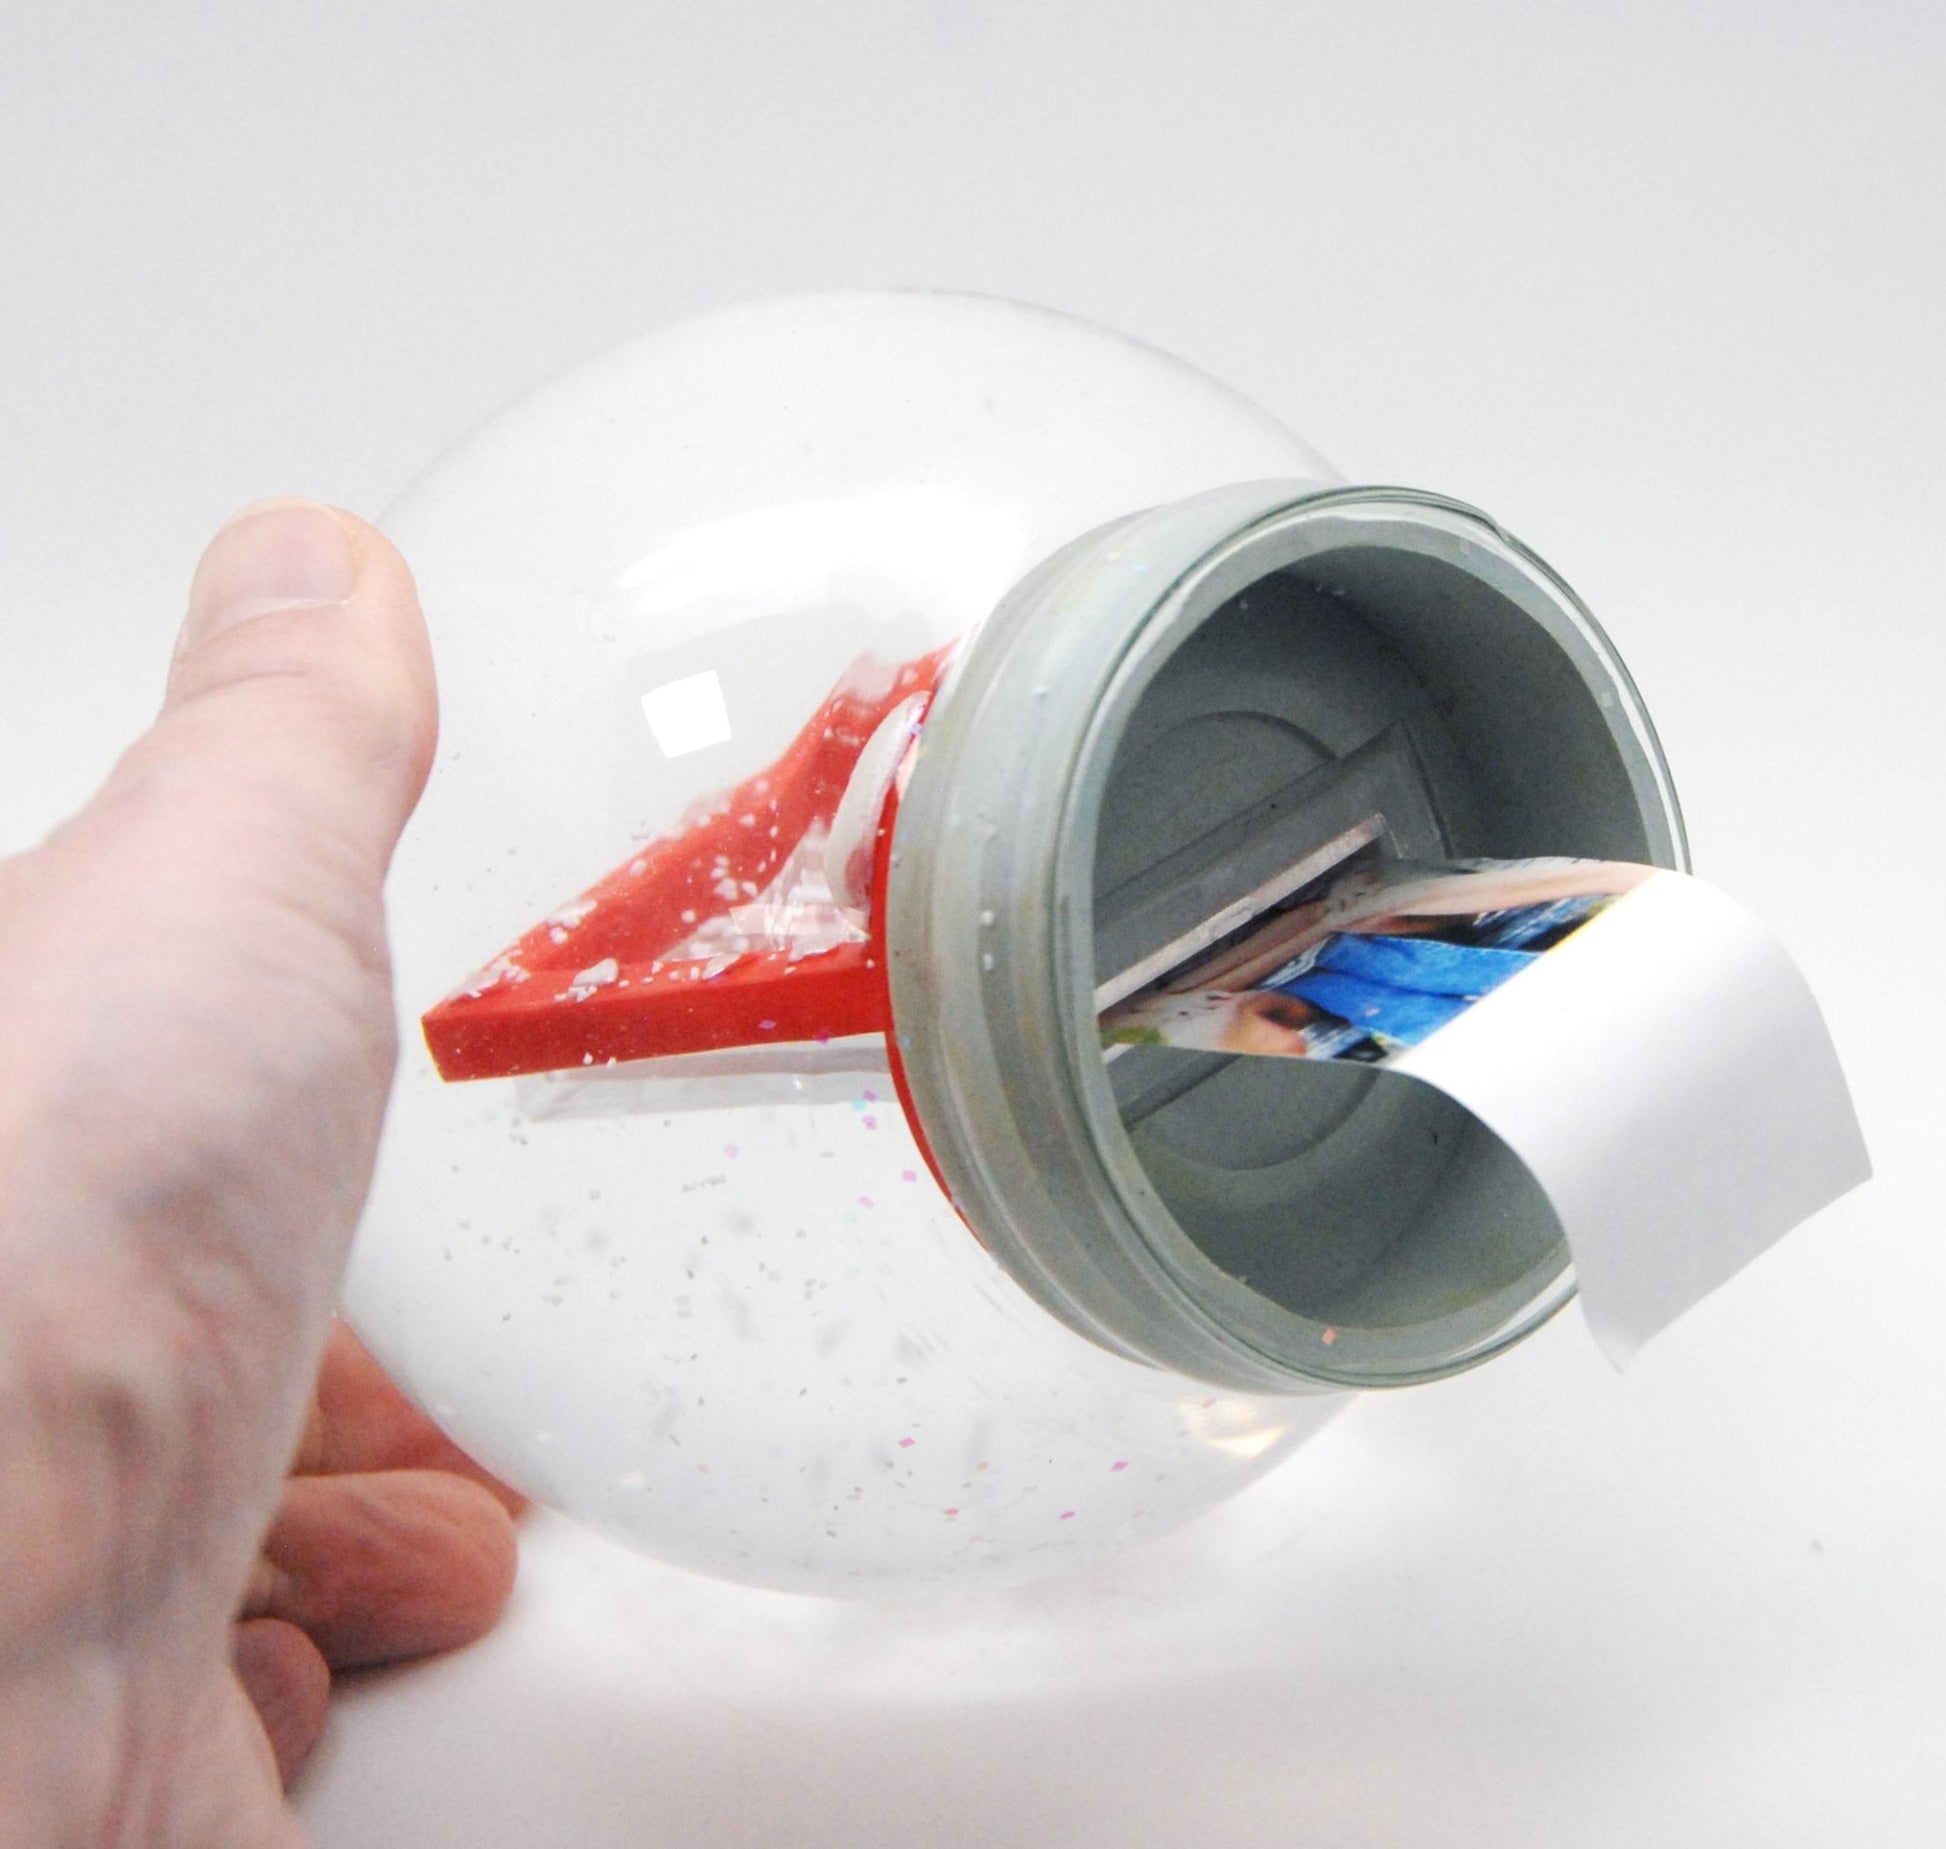 Bastelset mit 100mm Glas für DIY-Schneekugel mit Fotoeinsatz Rahmen Liebe Love mit Polyresin-Sockel weiß rund - Schneekugelhaus